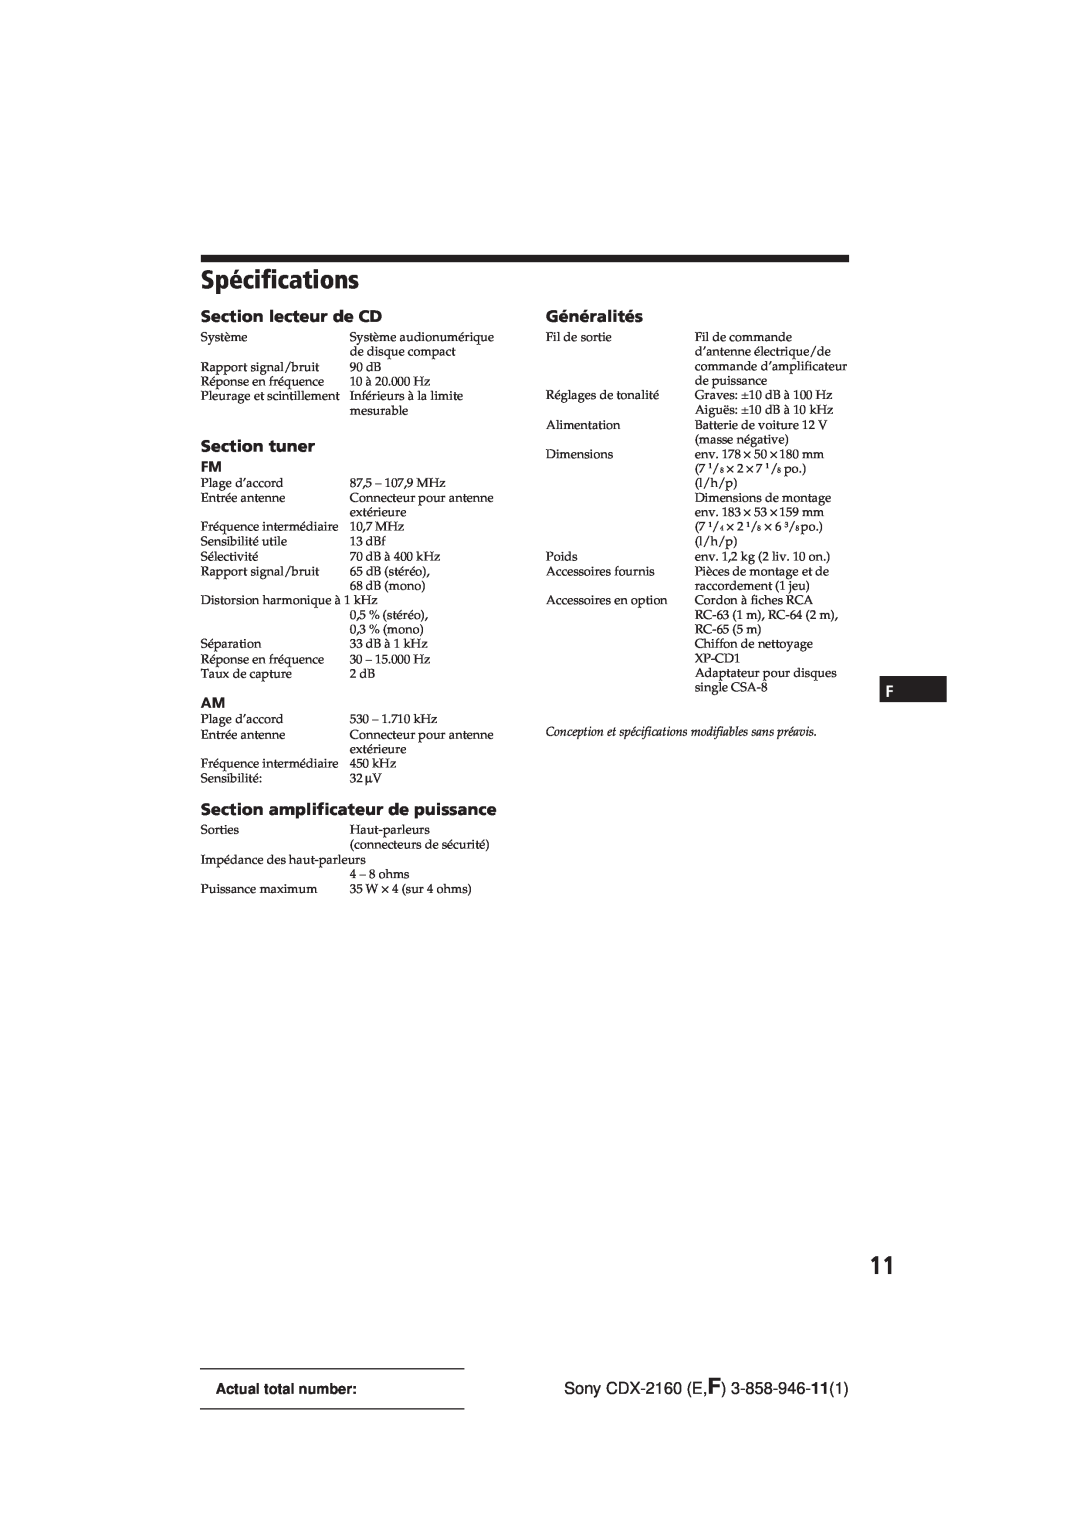 Sony CDX-2160 manual Spécifications, Section lecteur de CD, Section tuner, Section amplificateur de puissance, Généralités 